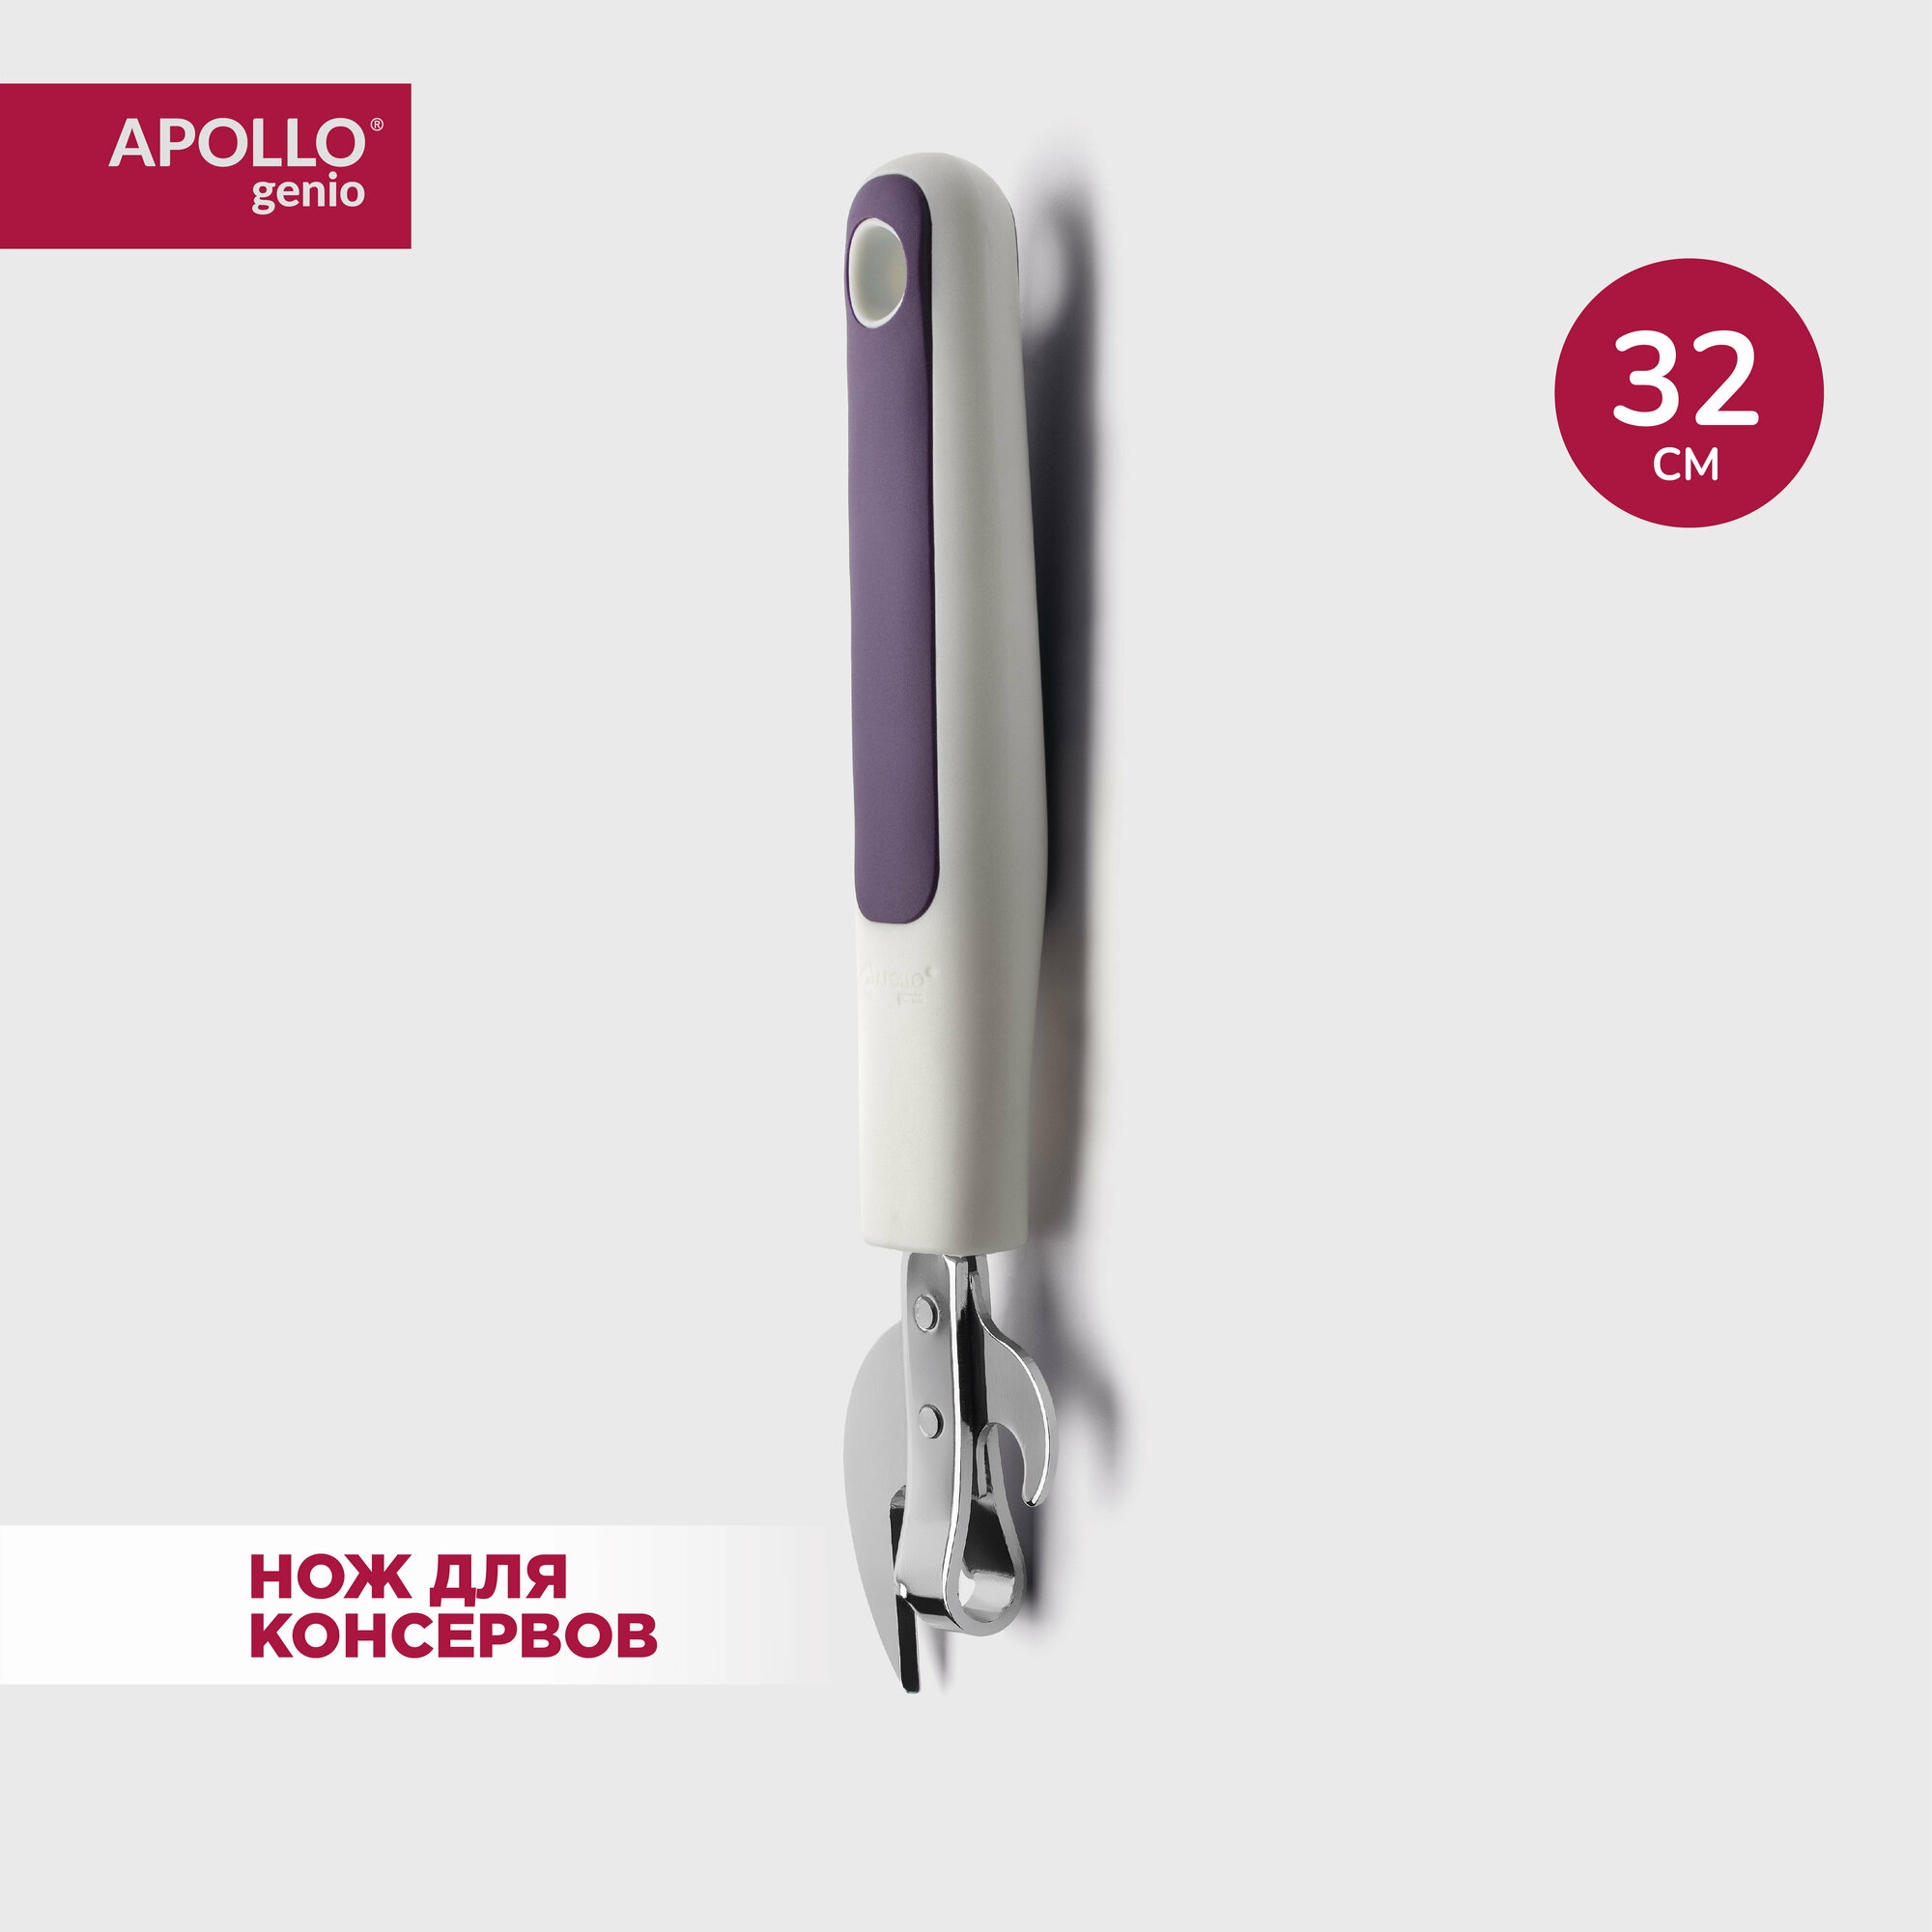 Открывашка нож для консервов Apollo genio "Optimus"